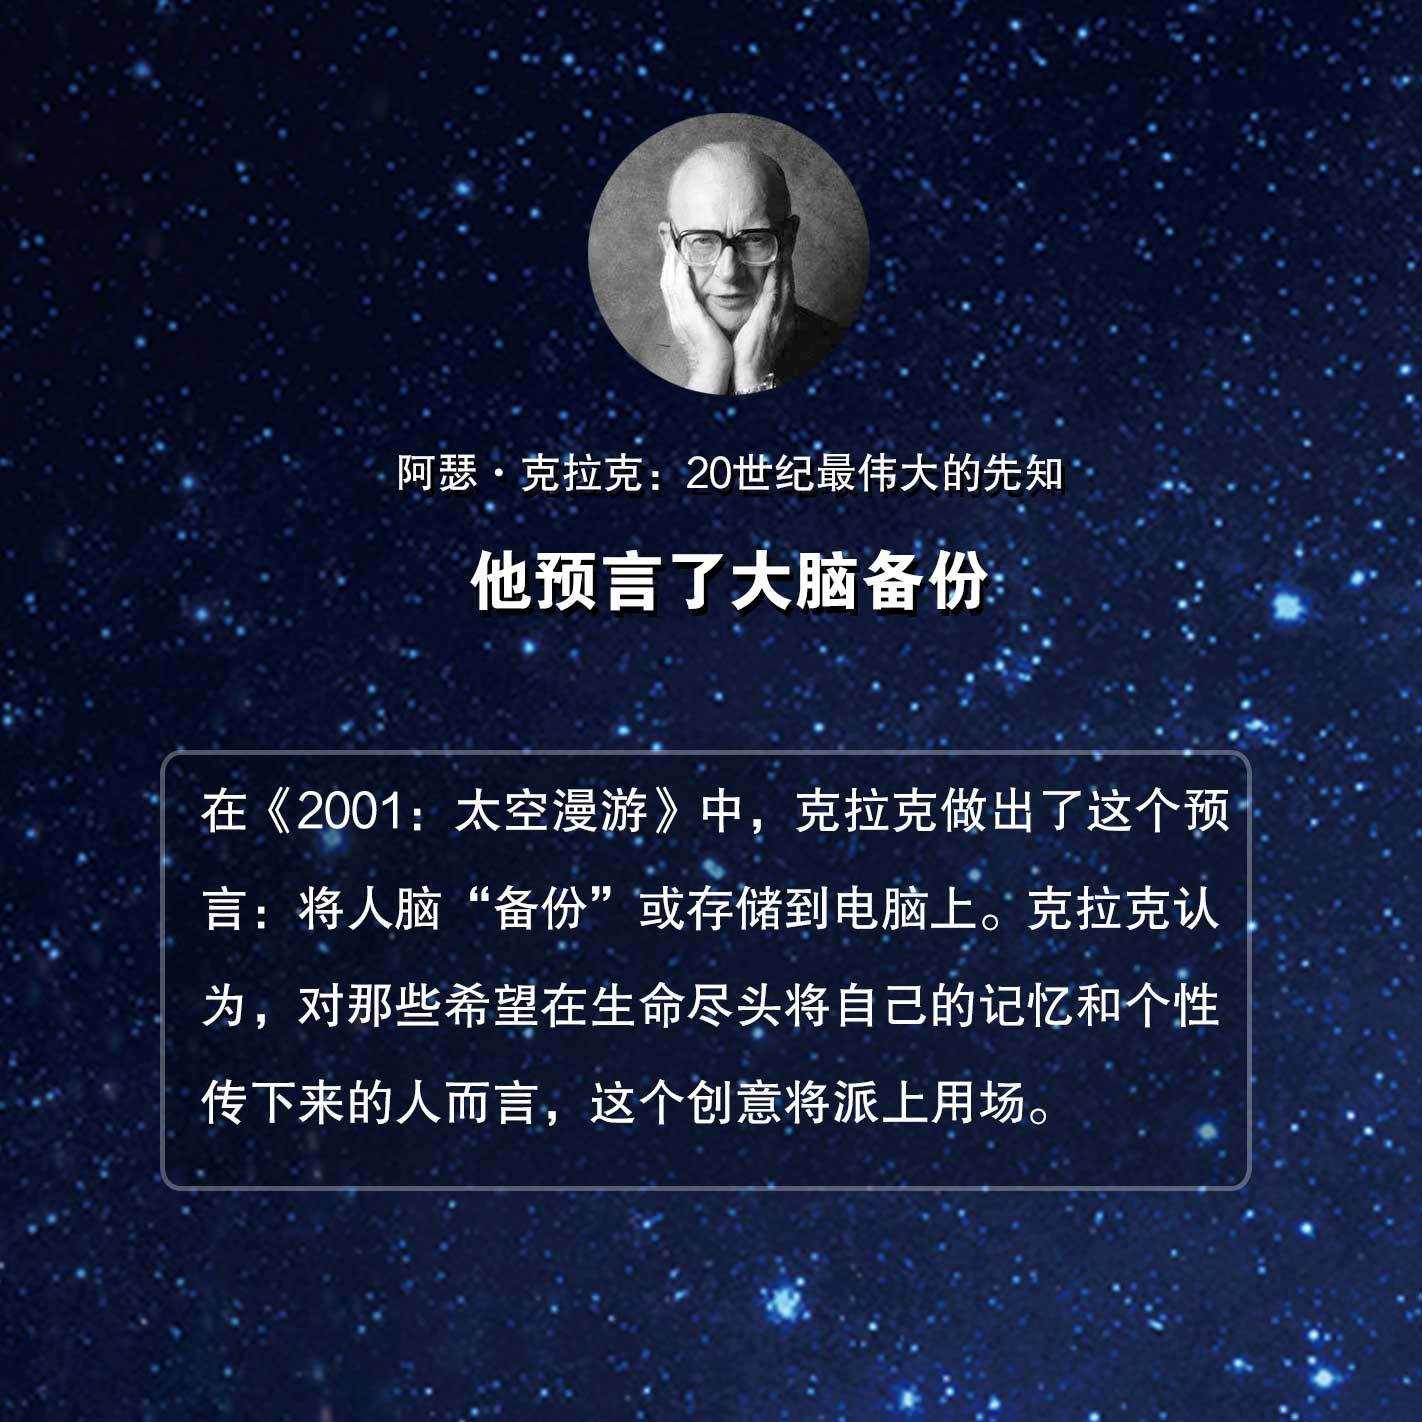 阿瑟克拉克9大预言:他是20世纪最伟大的先知,预言了卫星,人体冷冻